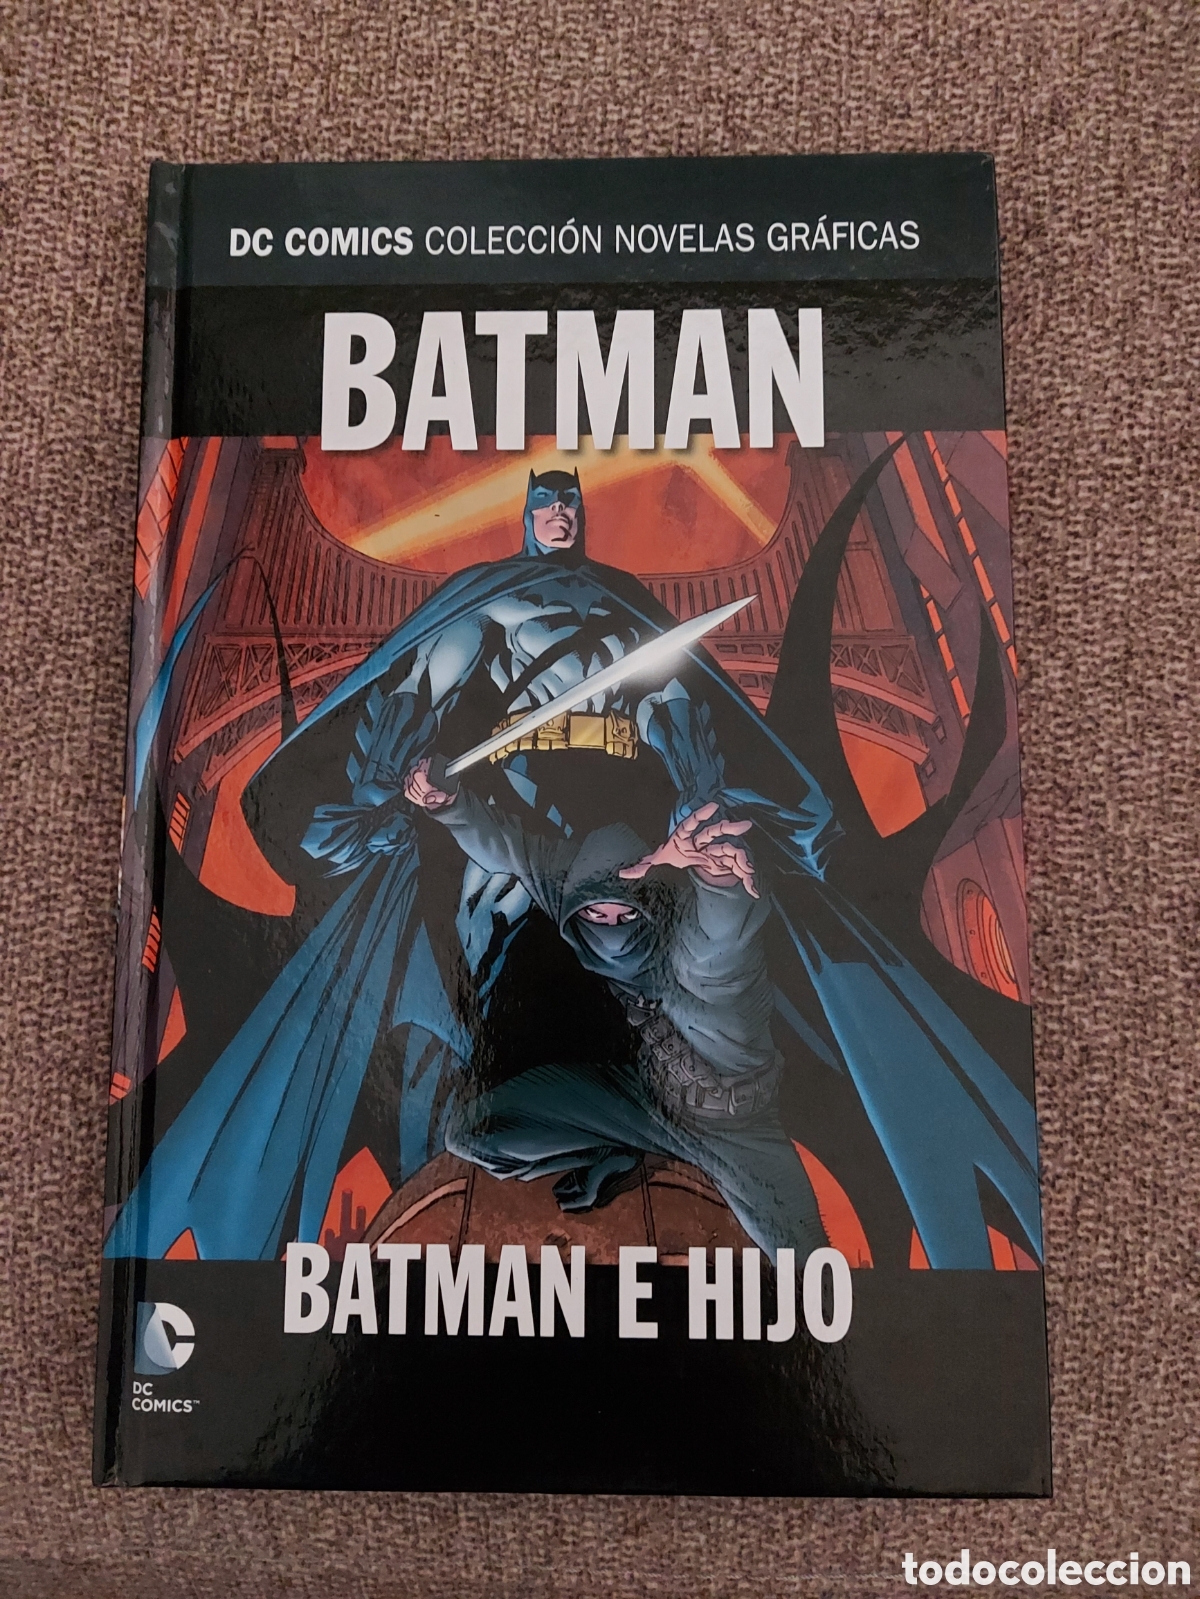 Interprete No quiero entre dc comics coleccion novelas graficas batman bat - Compra venta en  todocoleccion